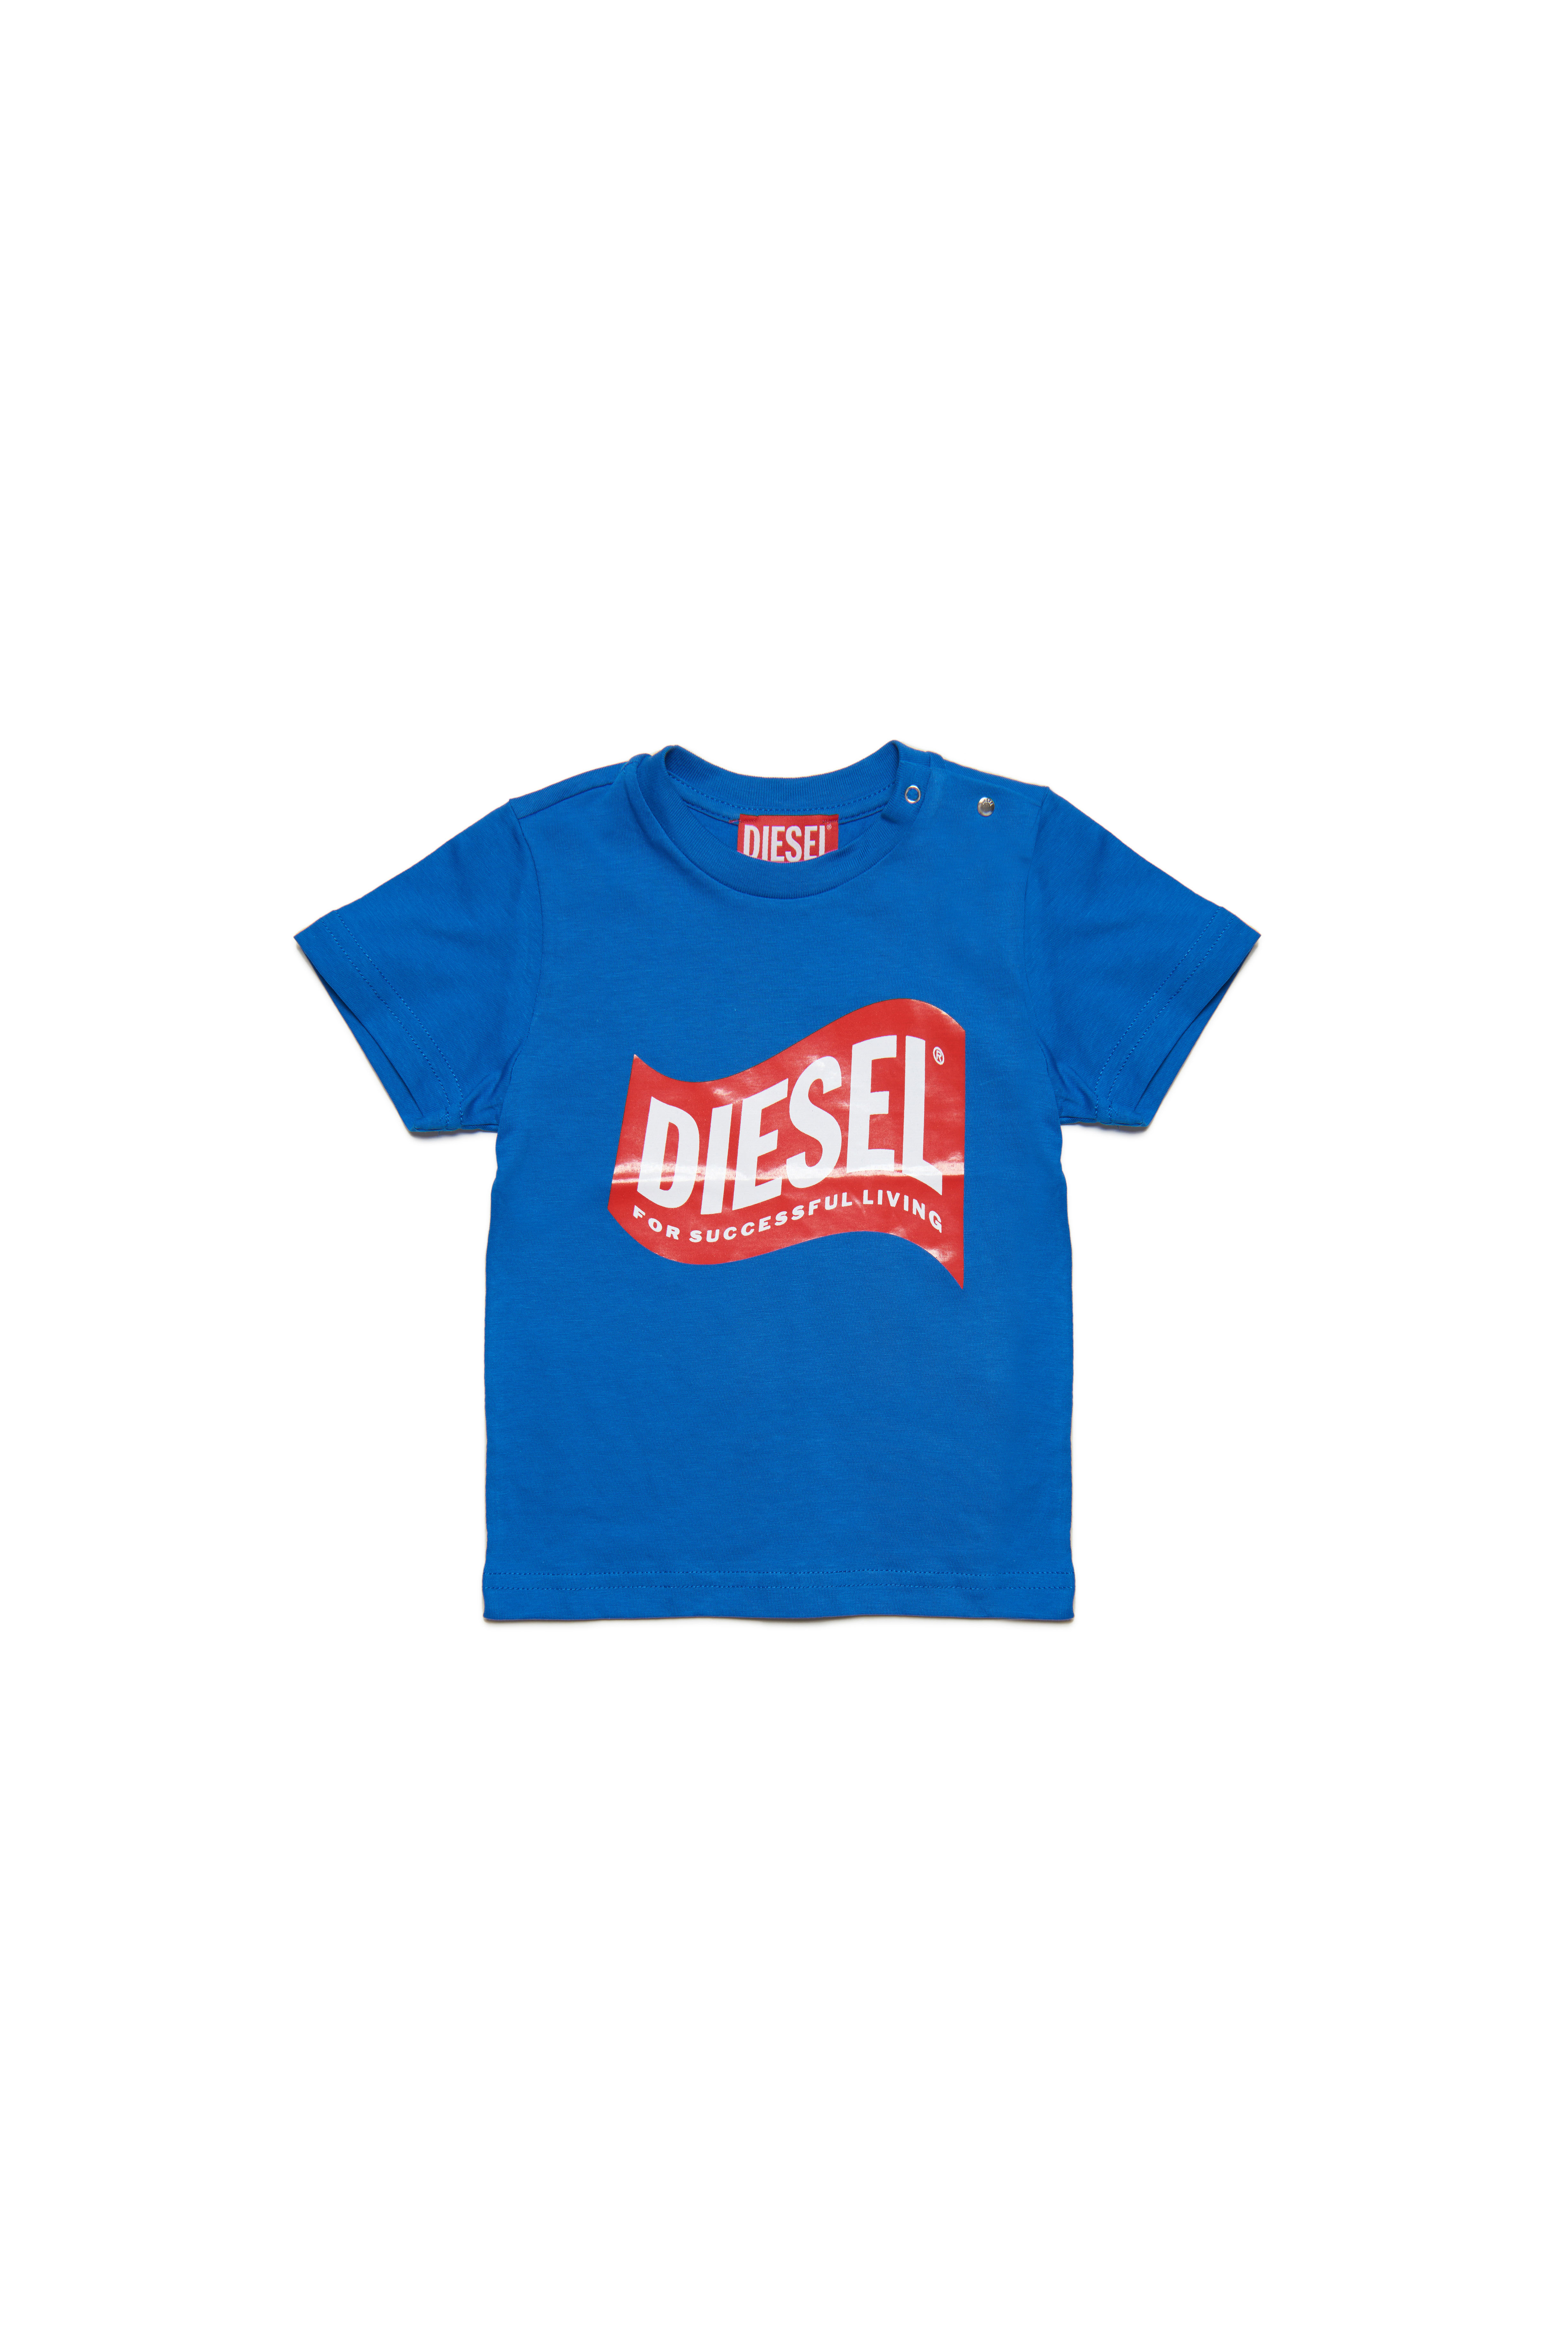 Diesel - TLINB, Blau - Image 1